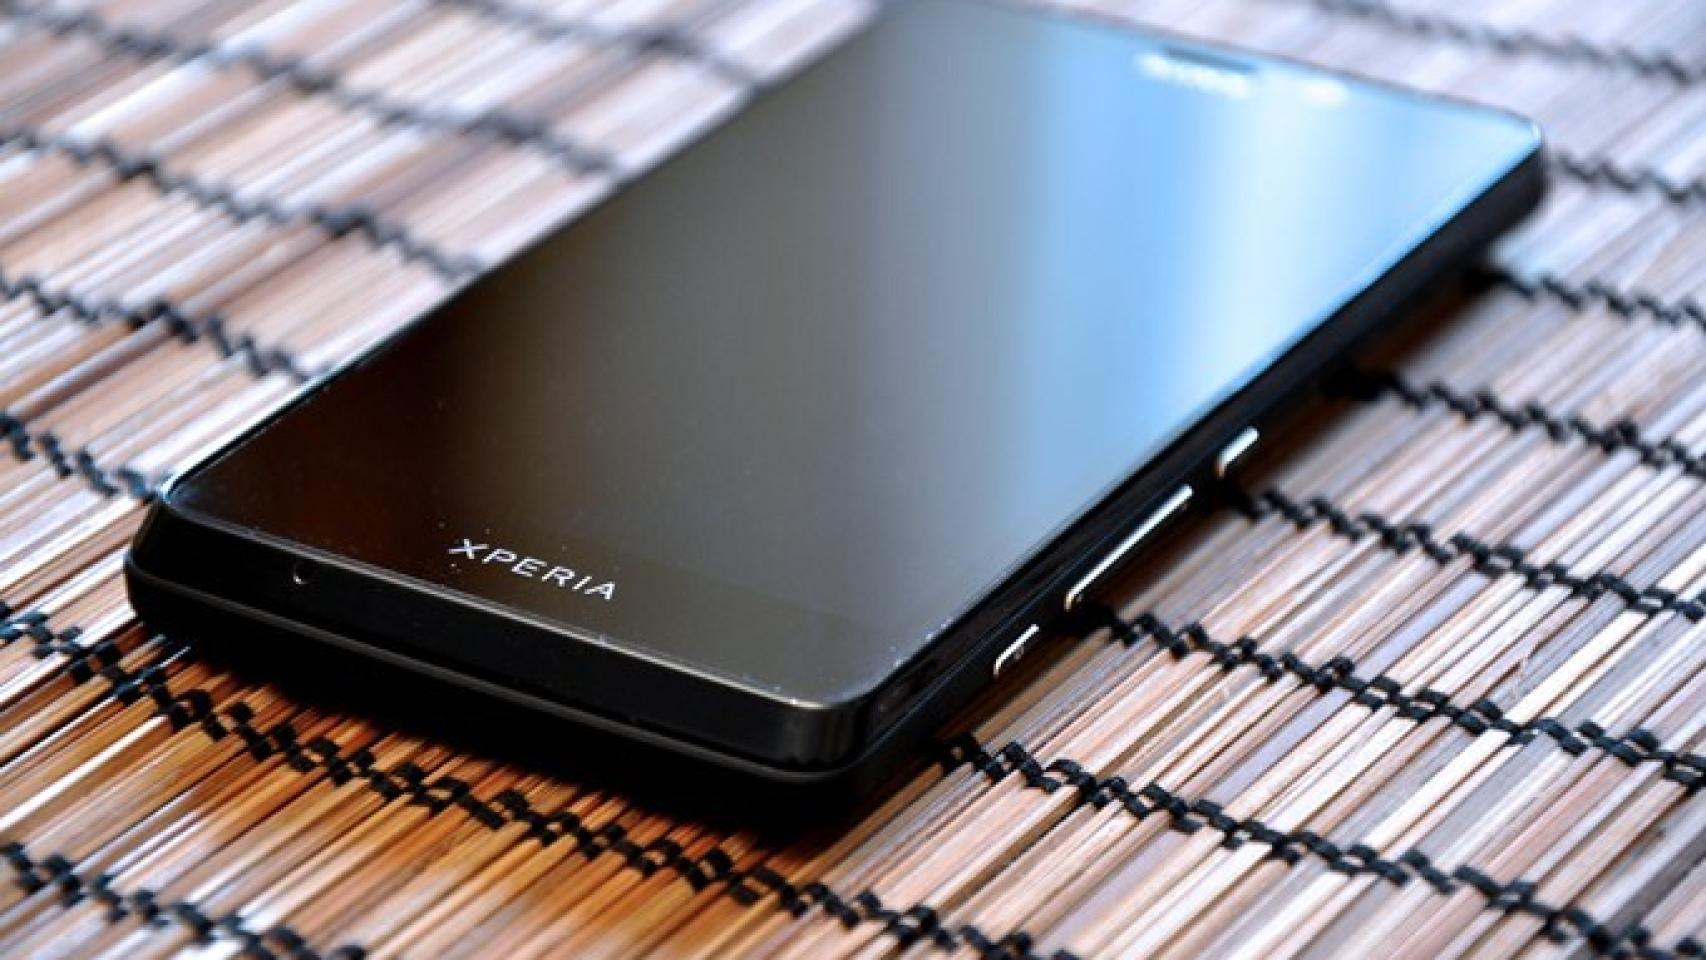 Sony Xperia T: Análisis completo y experiencia de uso